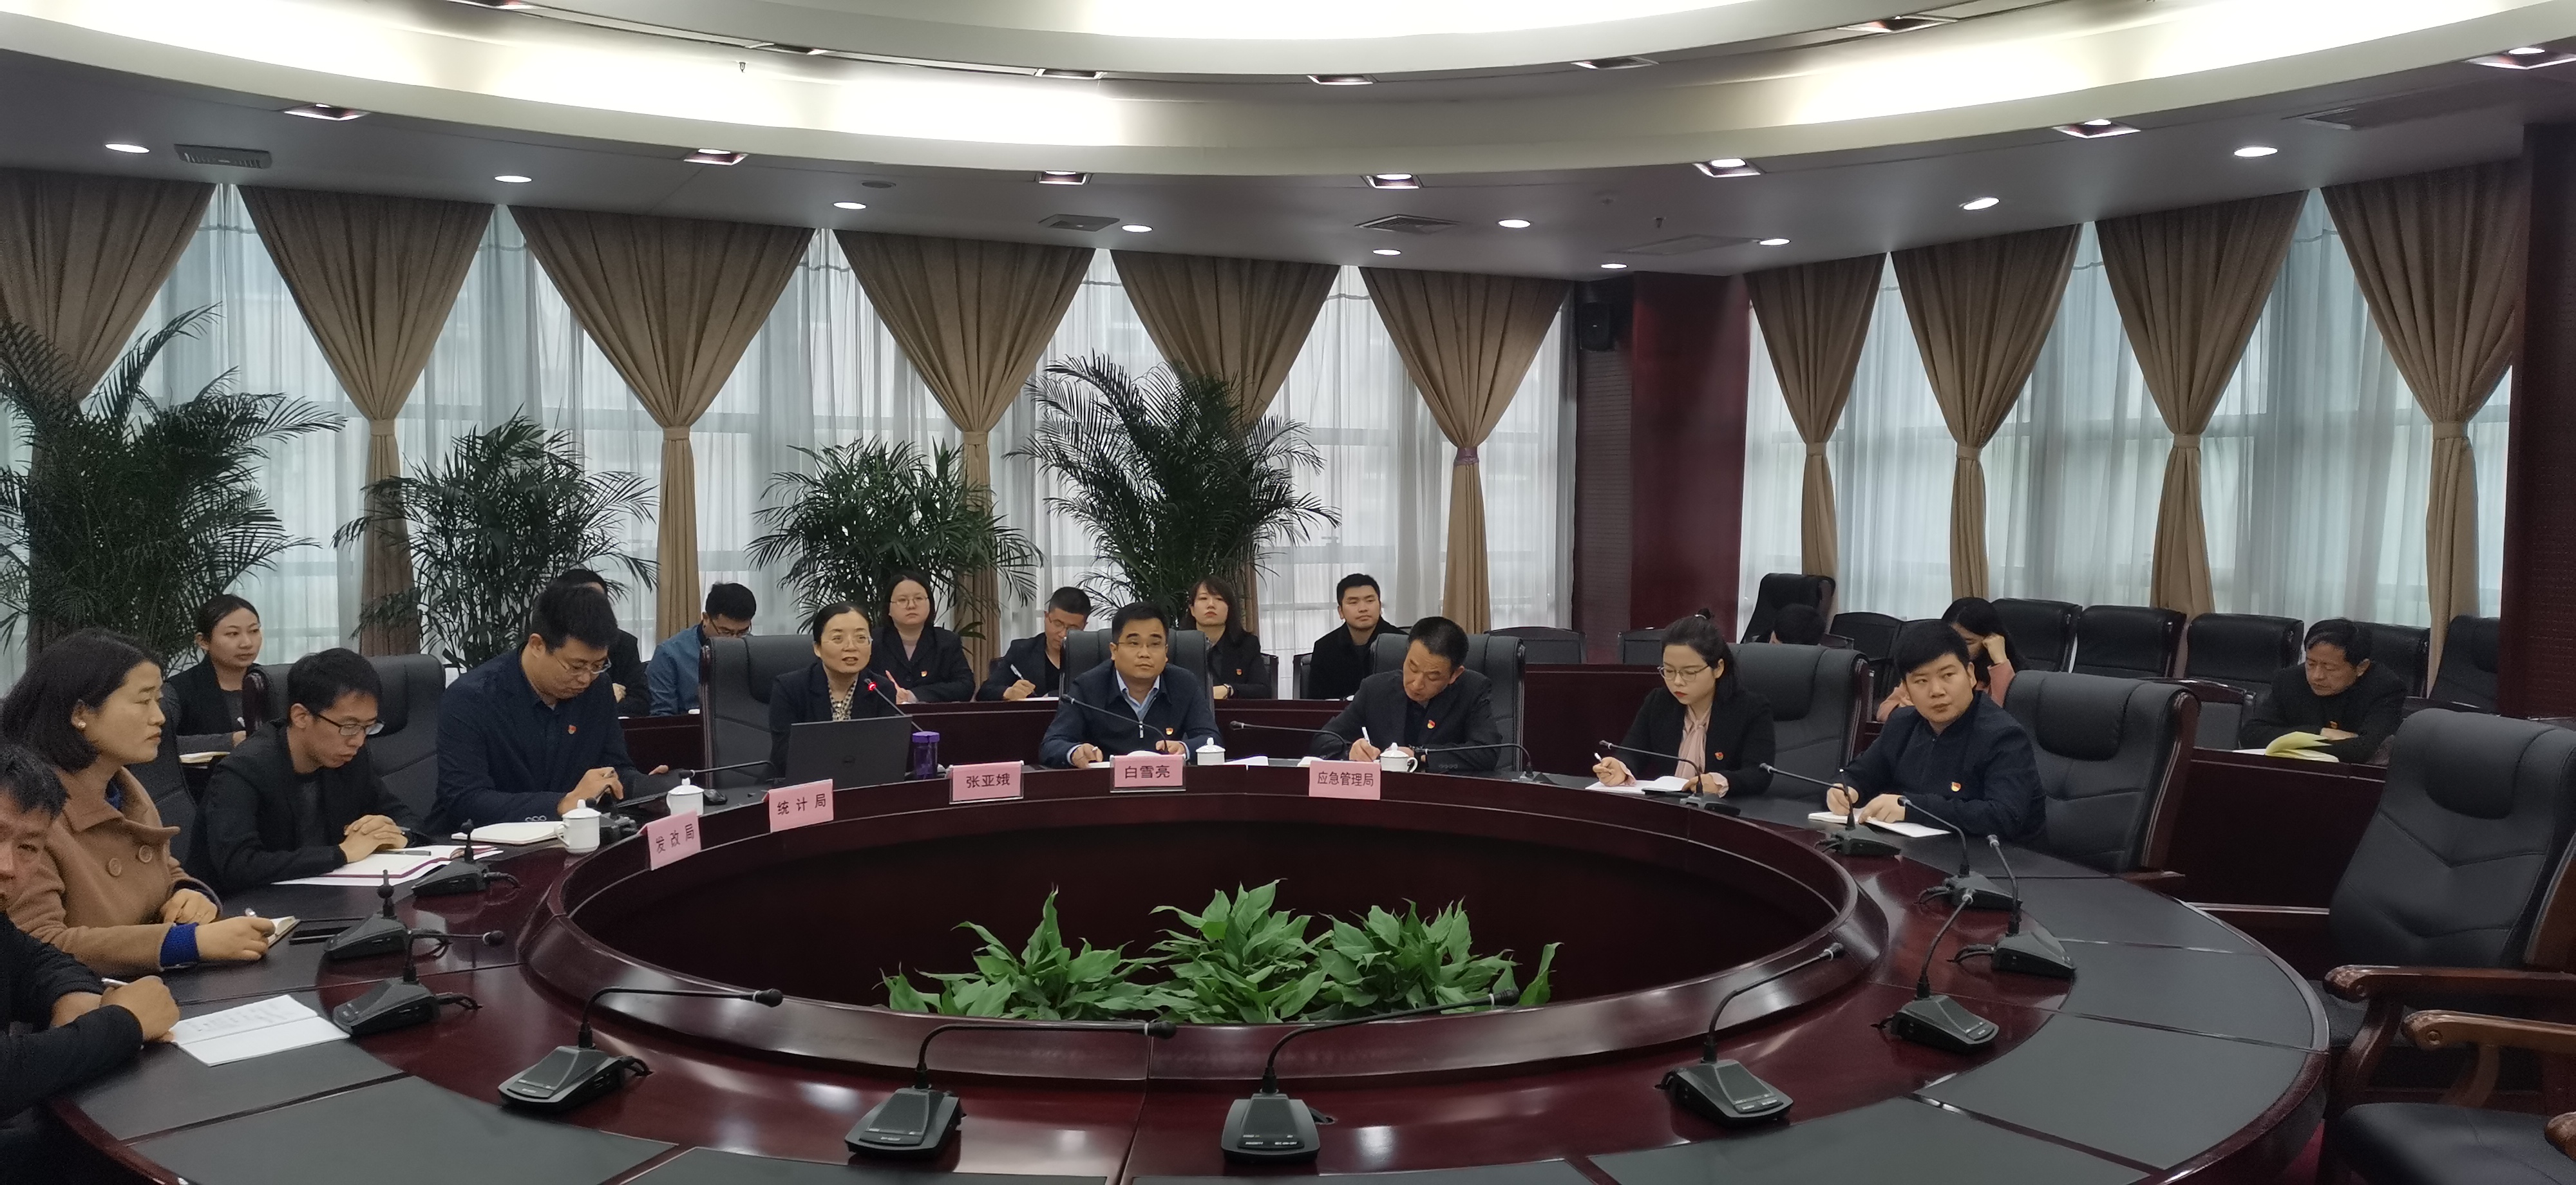 渭南高新区主要经济部门召开党史学习教育专题宣讲暨动员会议